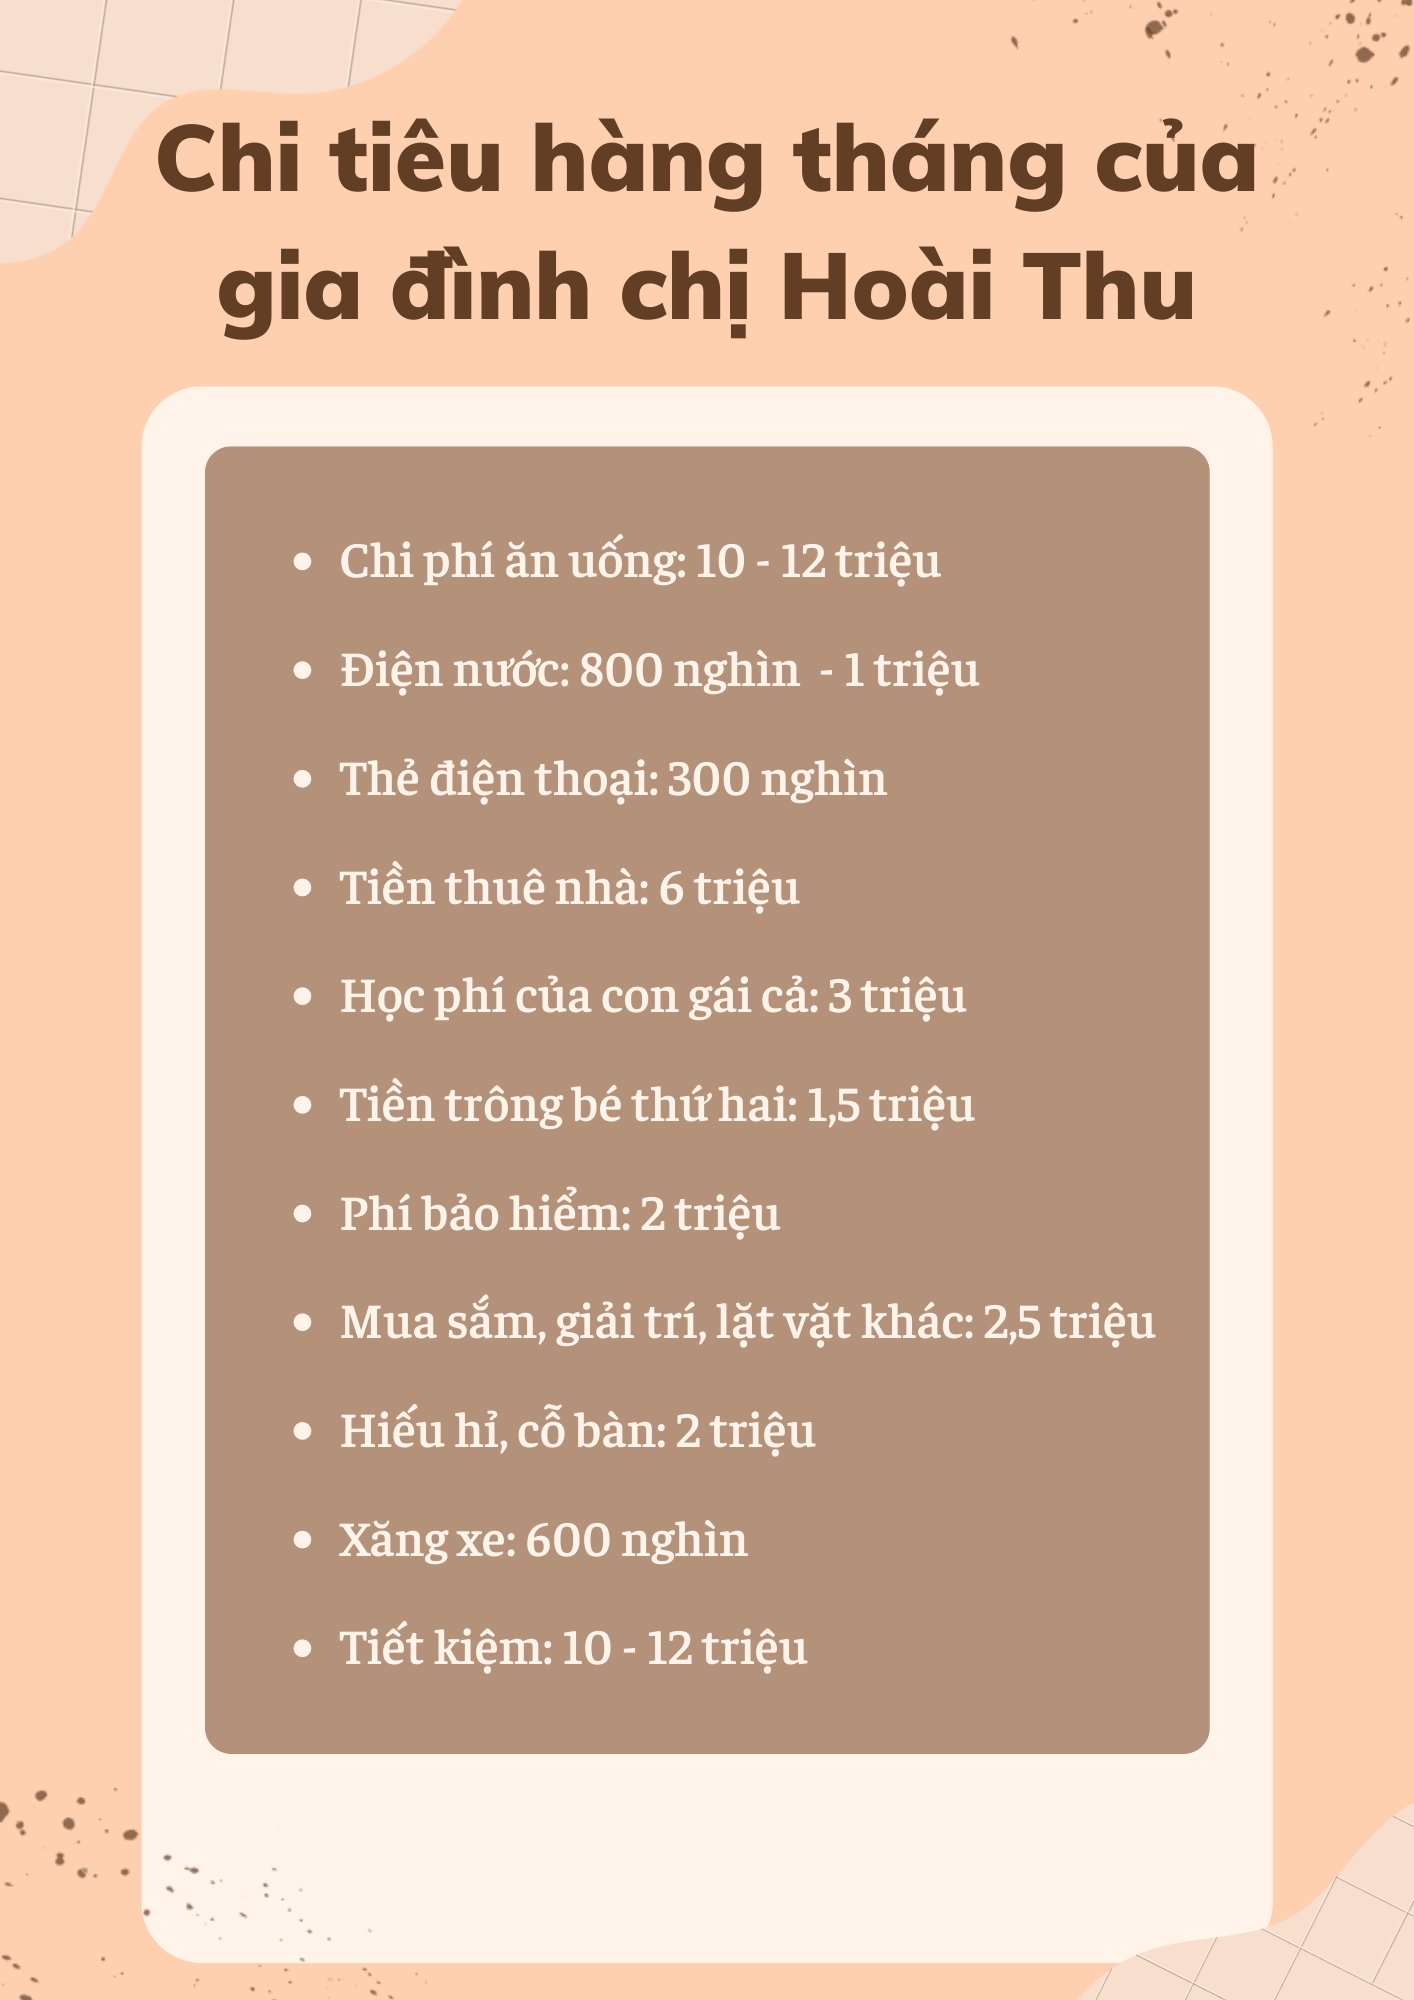 Ngó bảng chi tiêu của gia đình 4 người ở Hà Nội: Muốn cắt giảm để tiết kiệm được 50% thu nhập mỗi tháng  - Ảnh 1.